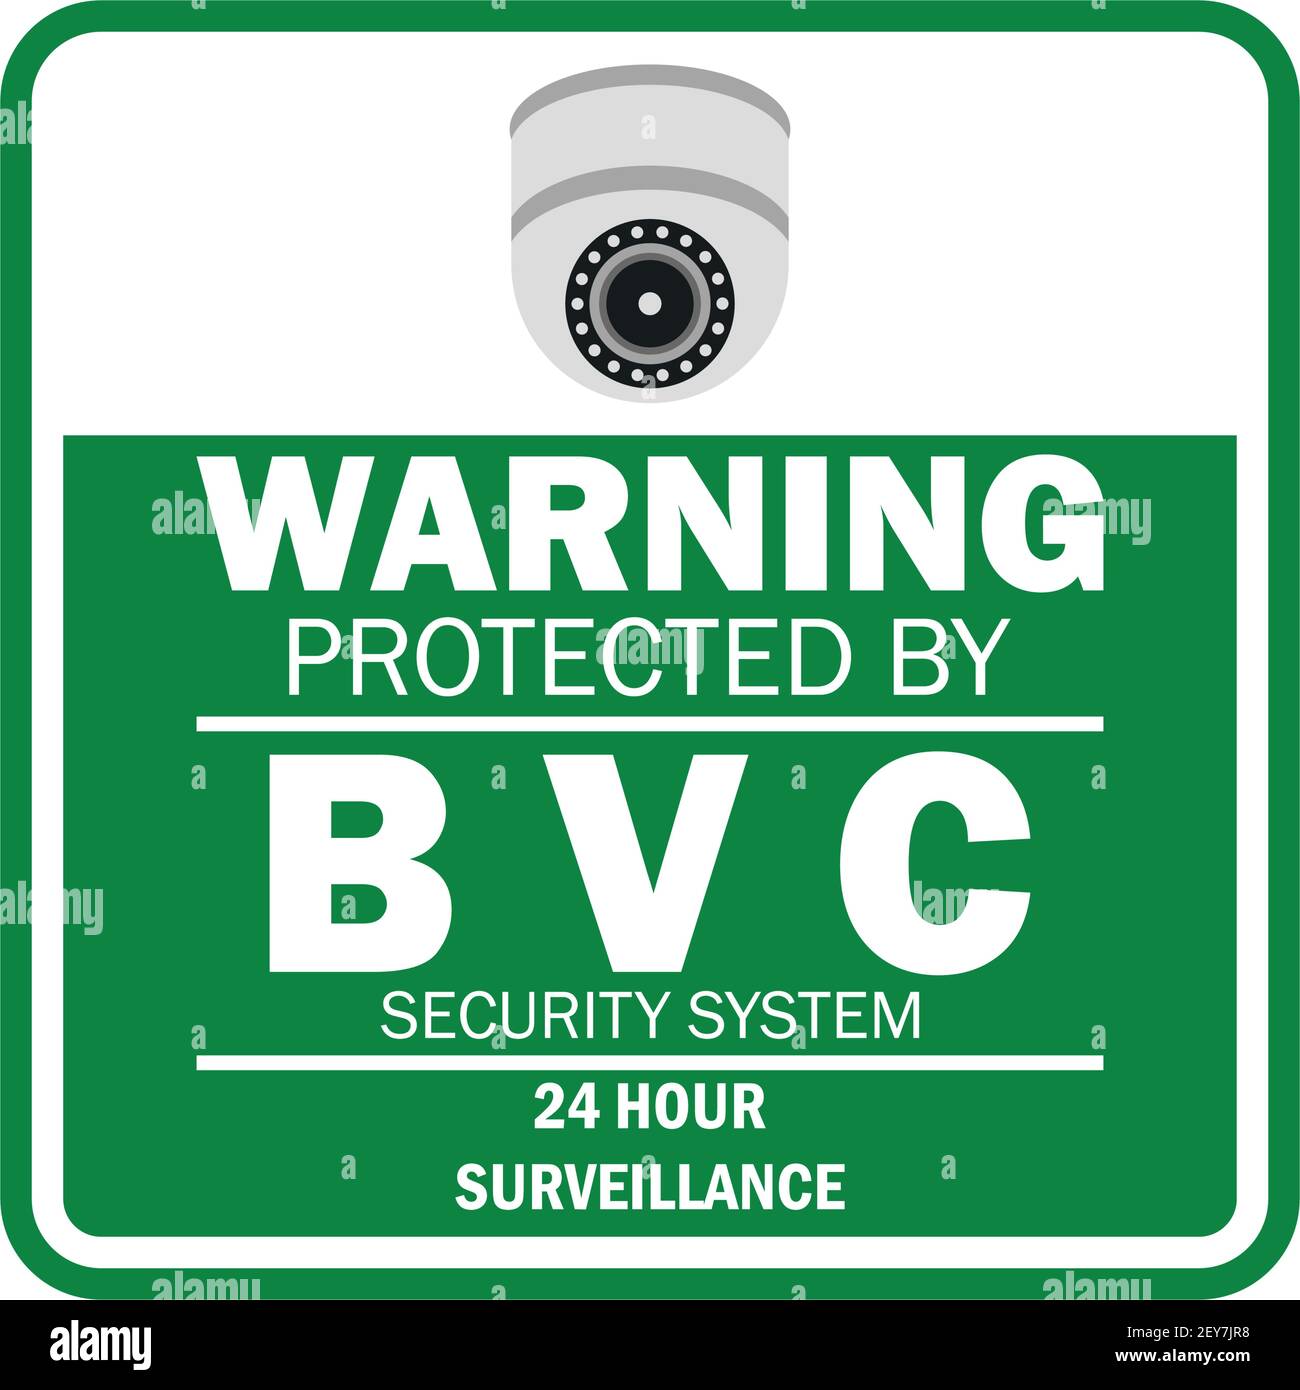 Panneau d'avertissement zone protégée par vidéosurveillance avec caméra de vidéosurveillance pour la sécurité de la maison. Illustration vectorielle Illustration de Vecteur